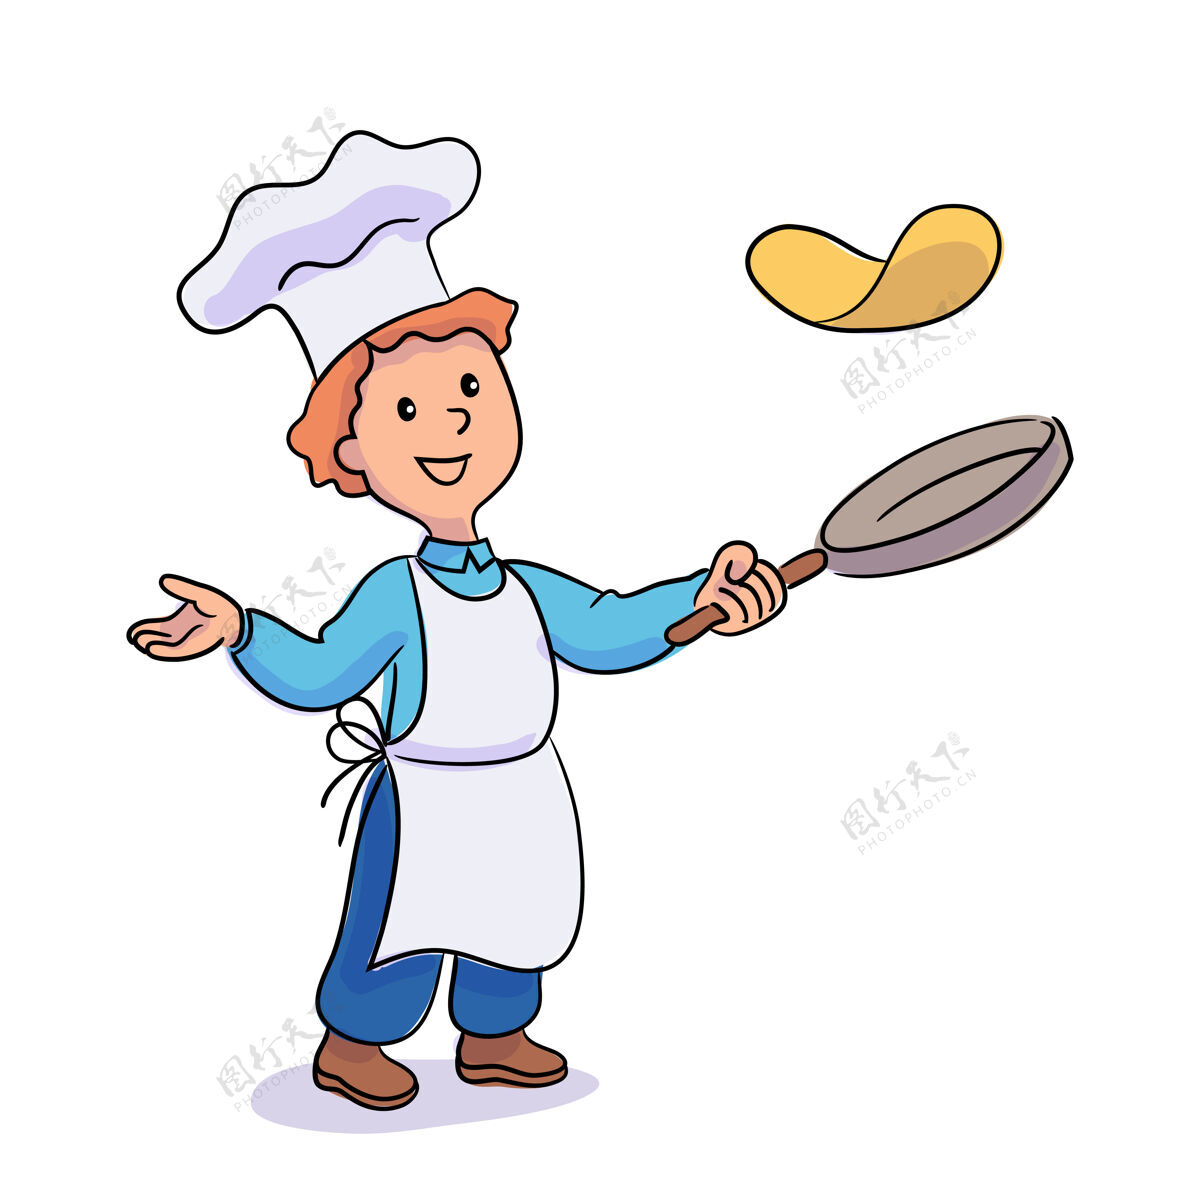 帽子小男孩在煎锅里扔煎饼孩子微笑人物